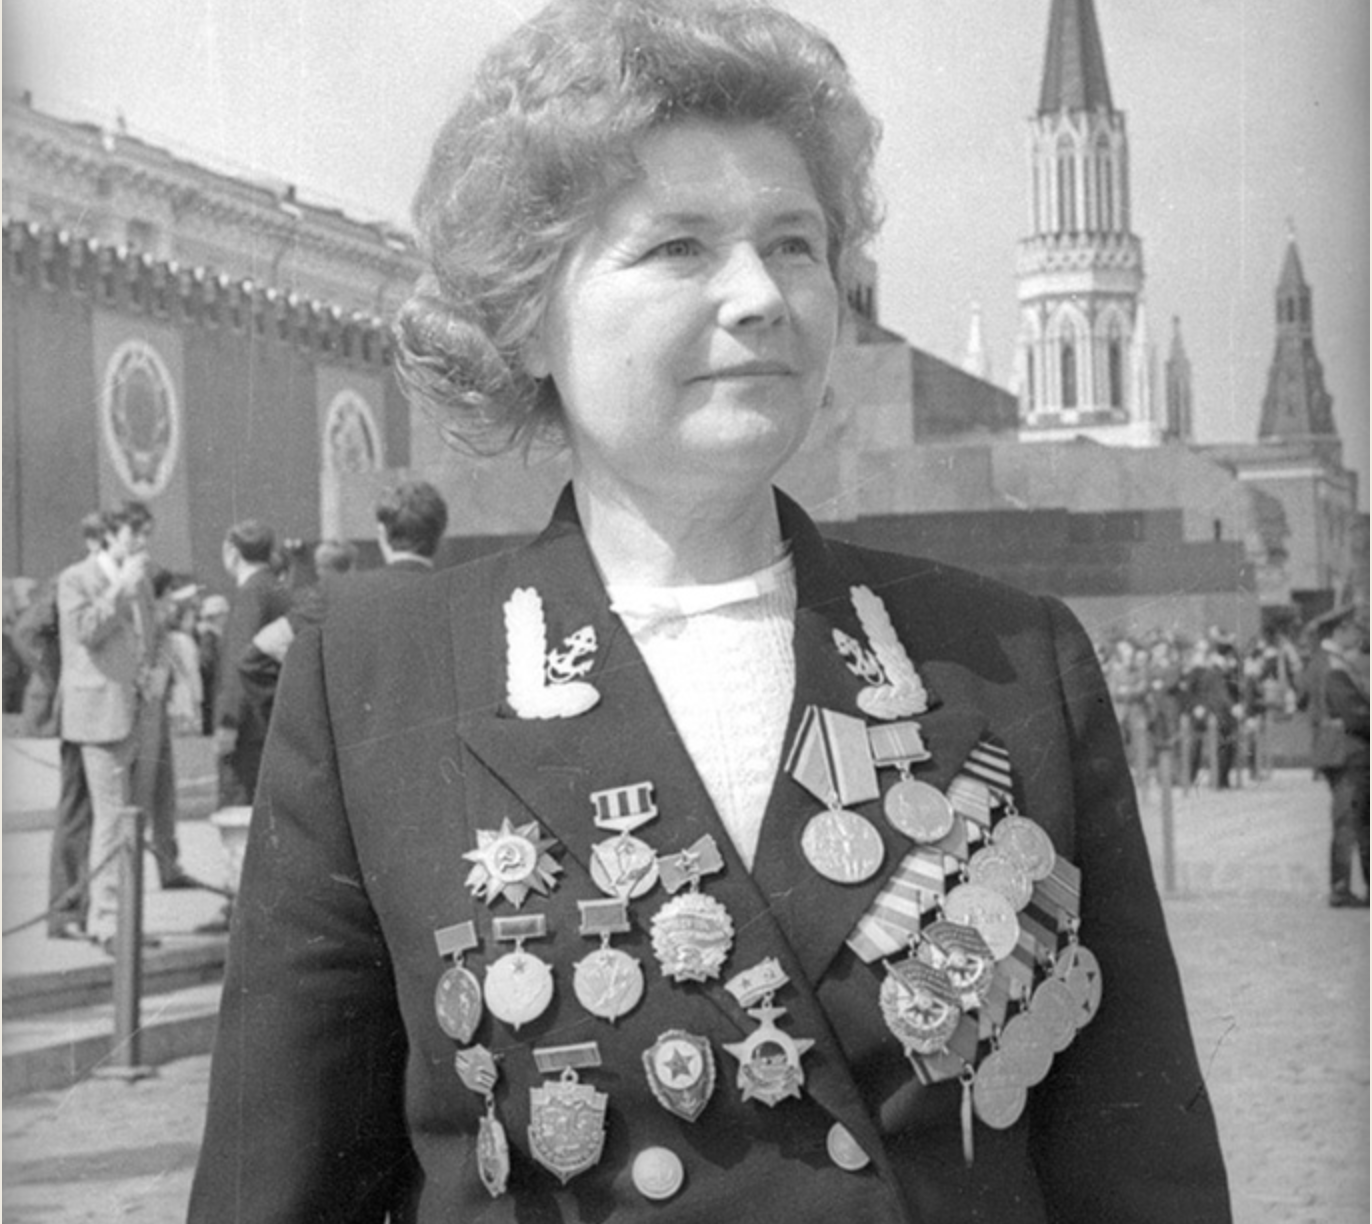 Junakinja Sovjetske zveze Jekaterina Djomina